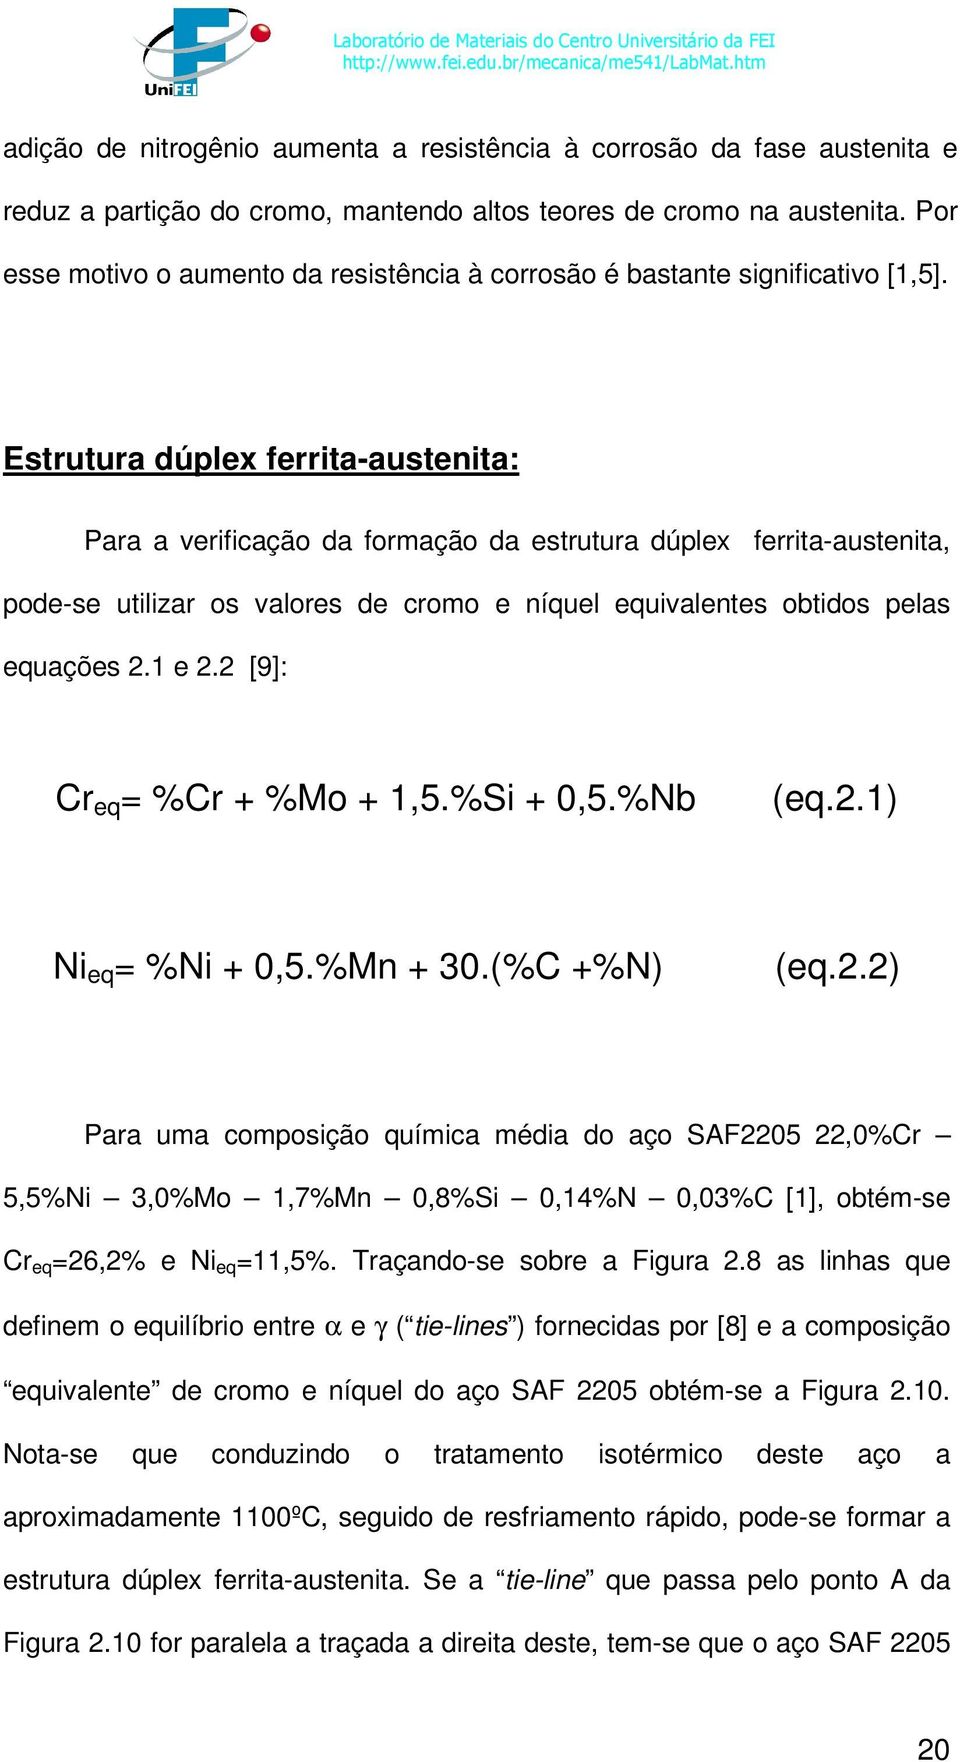 Estrutura dúplex ferrita-austenita: Para a verificação da formação da estrutura dúplex ferrita-austenita, pode-se utilizar os valores de cromo e níquel equivalentes obtidos pelas equações 2.1 e 2.